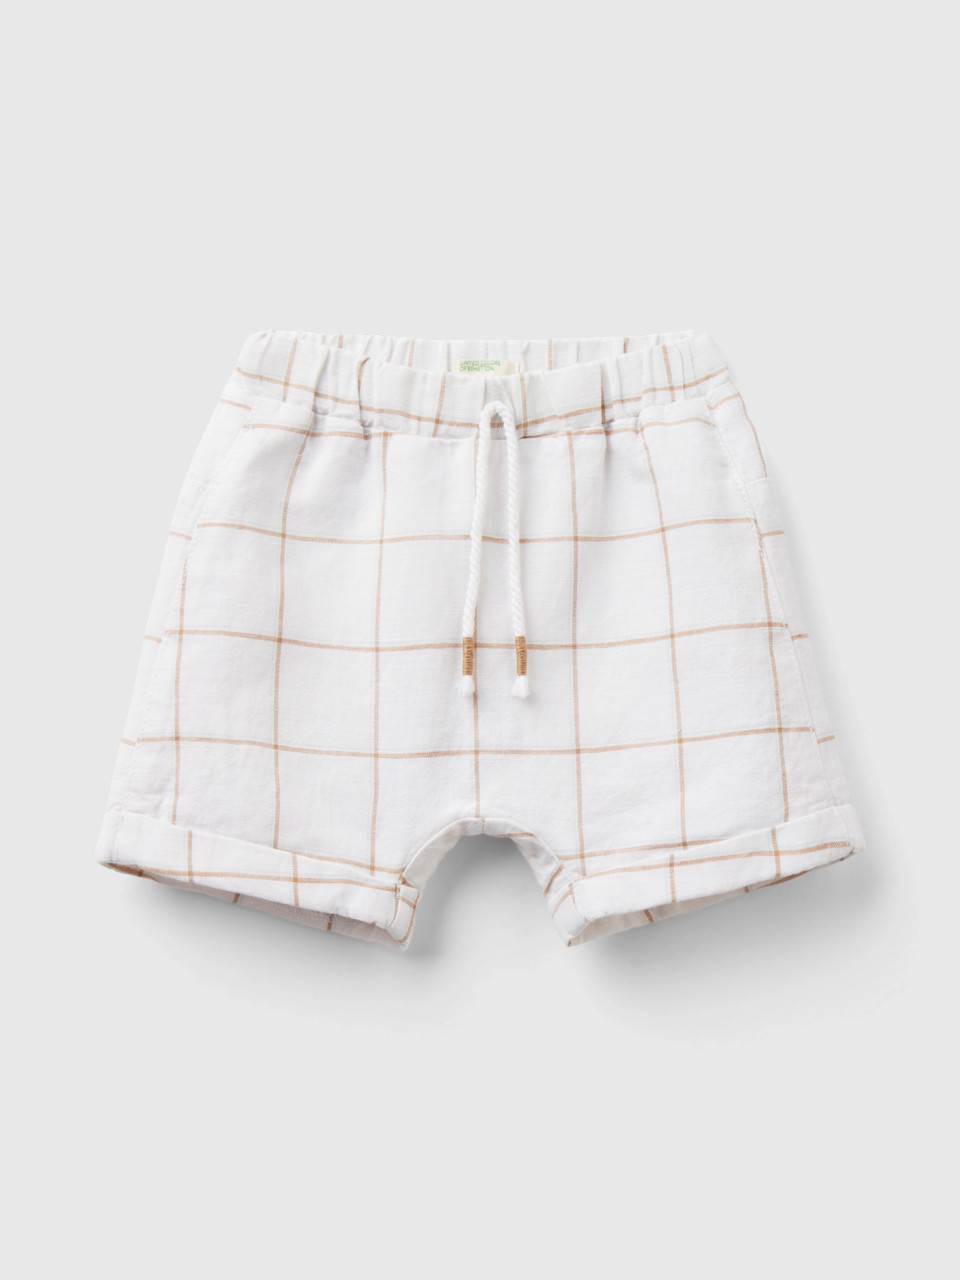 Benetton, Check Shorts In Linen Blend, White, Kids